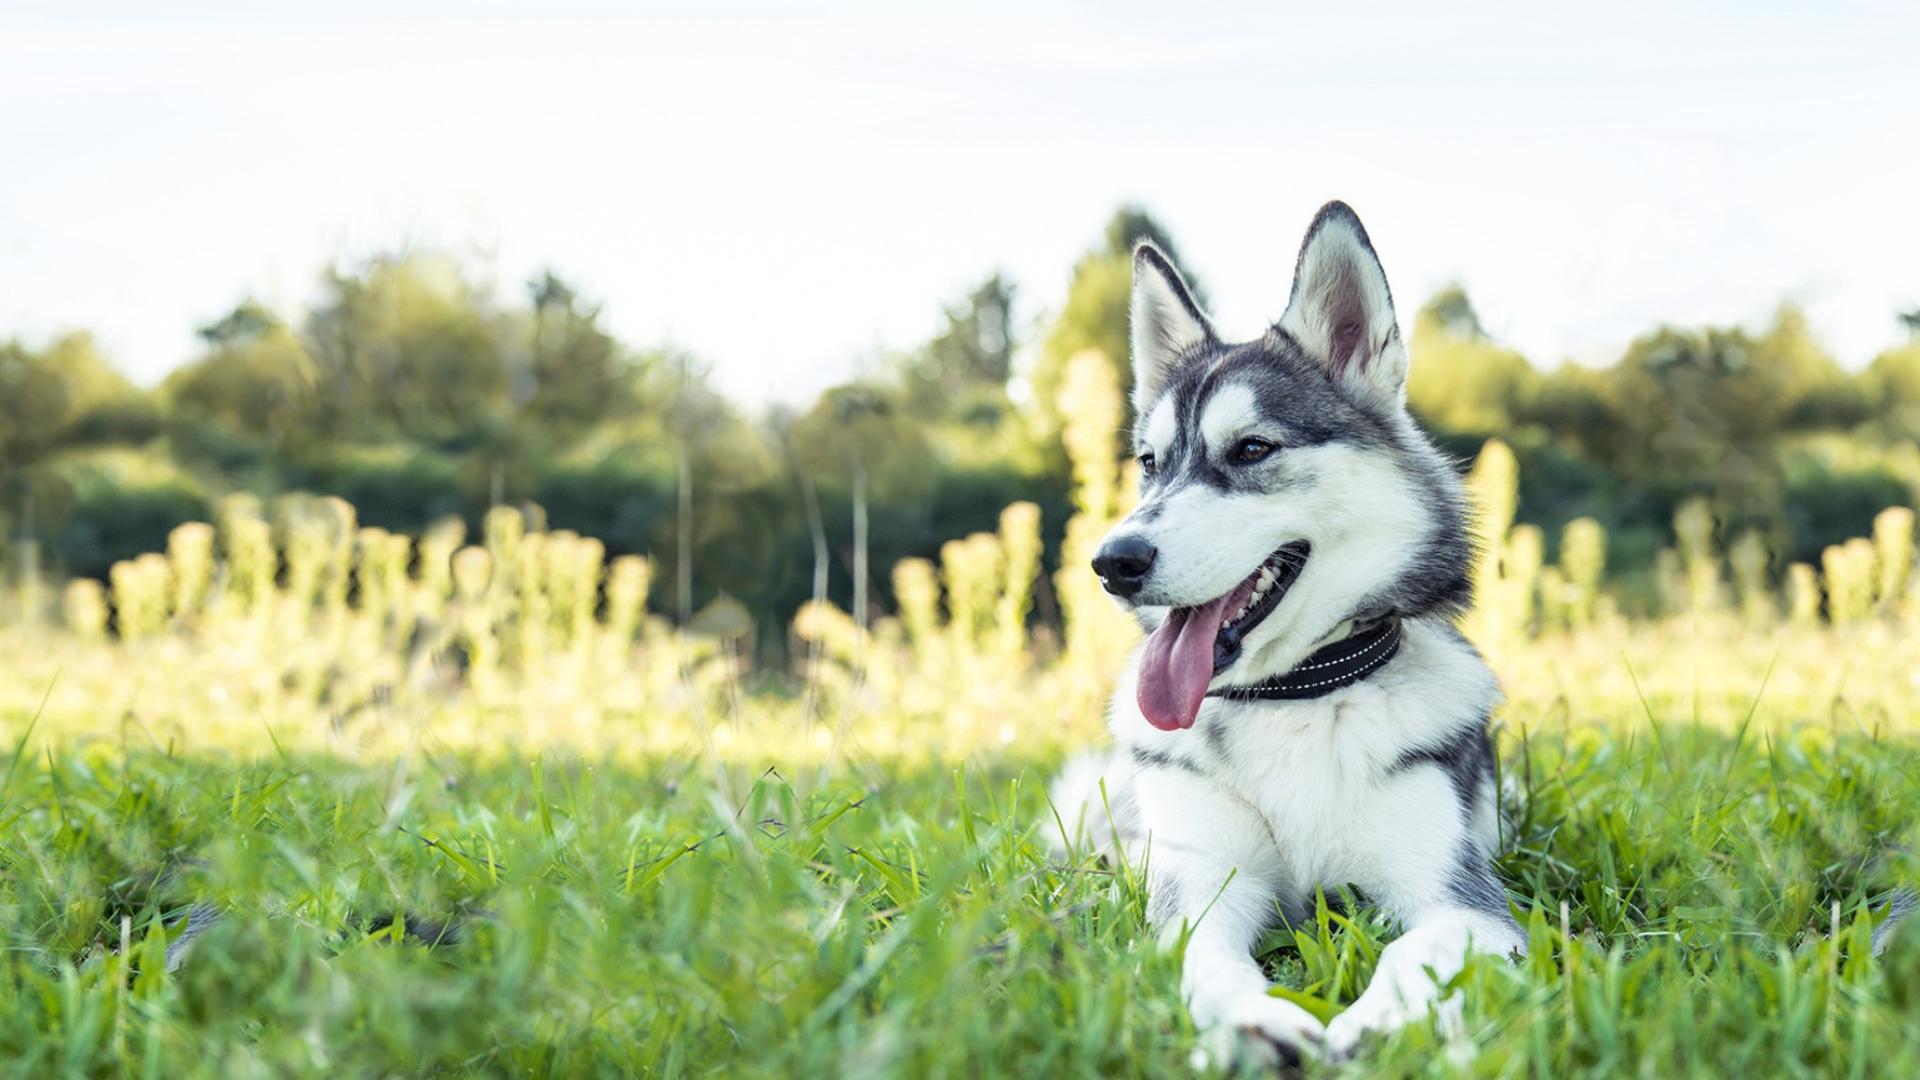 Auf dem Bild ist ein glücklicher Hund abgebildet, der auf einer grünen Wiese liegt. 